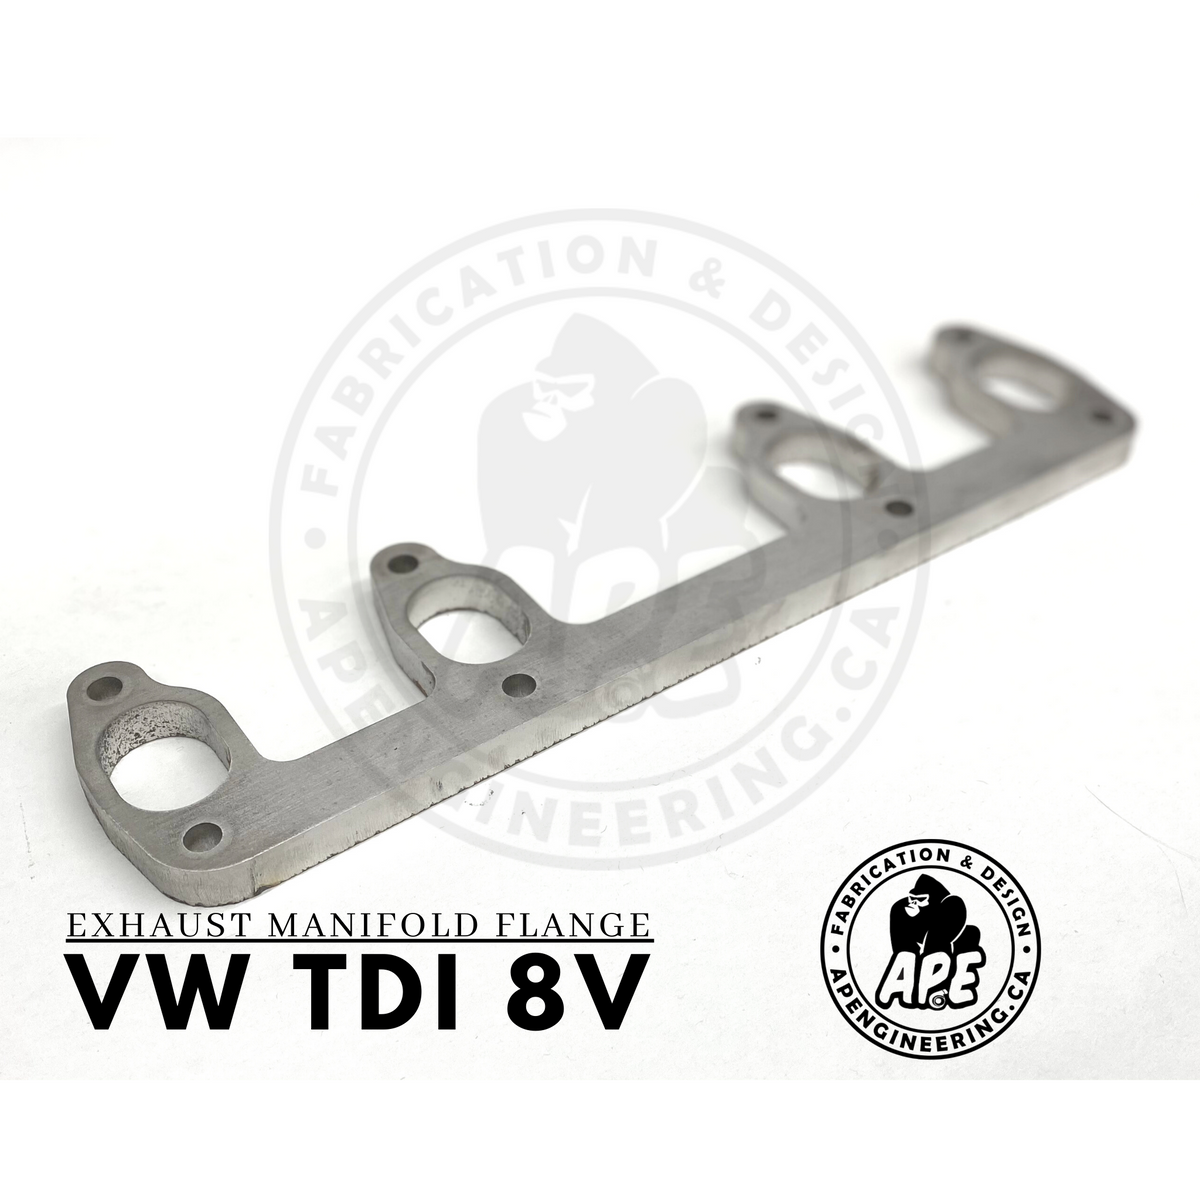 VAG 1.9 2.0 8v mild steel exhaust manifold flange PD130 